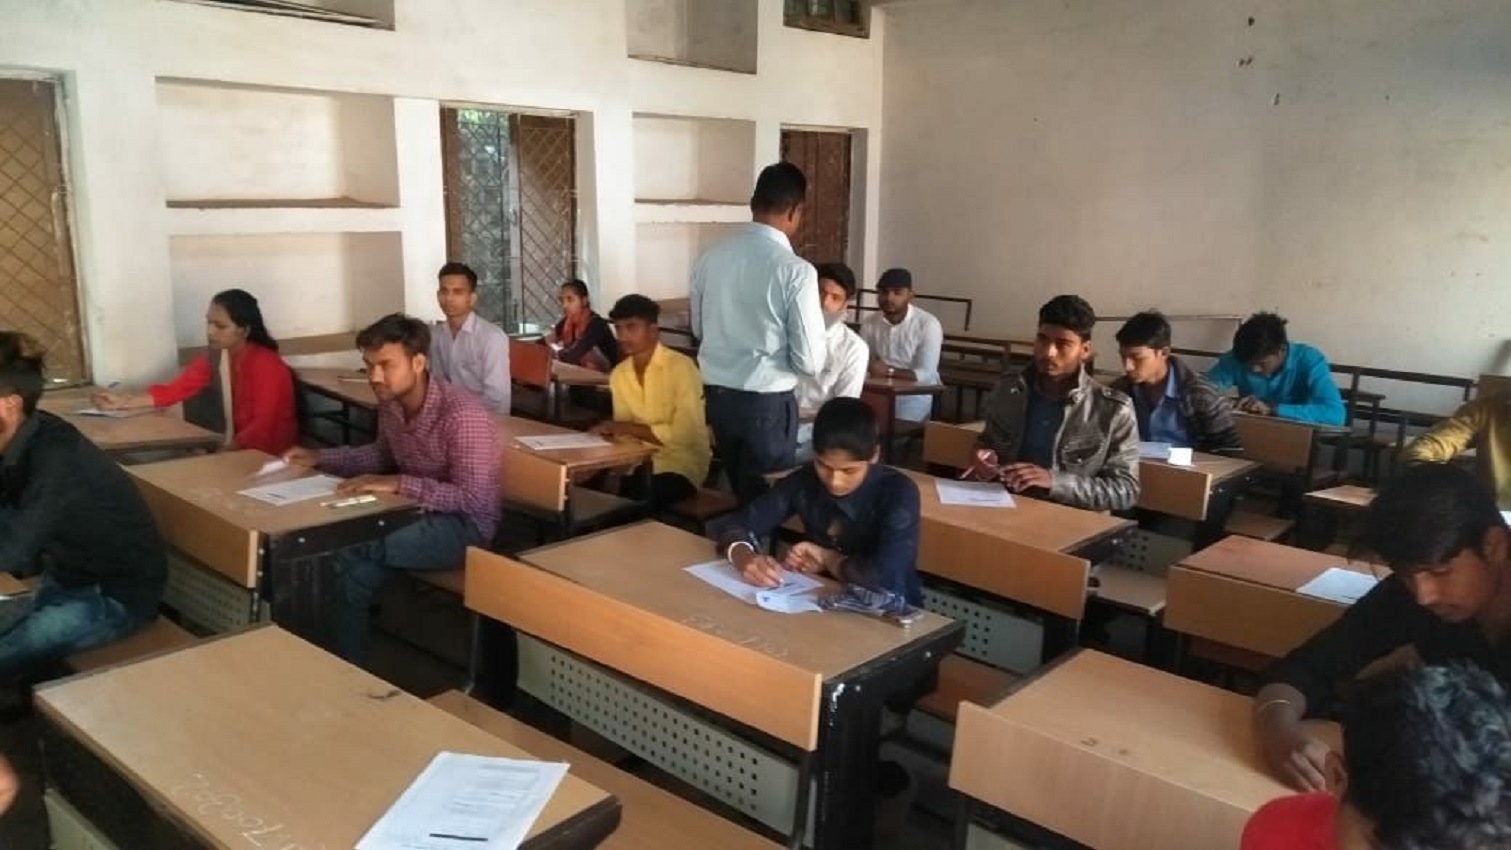 हिंदी के पेपर के साथ बोर्ड परीक्षा शुरू, जमीन पर बैठकर बच्चों ने दी परीक्षा